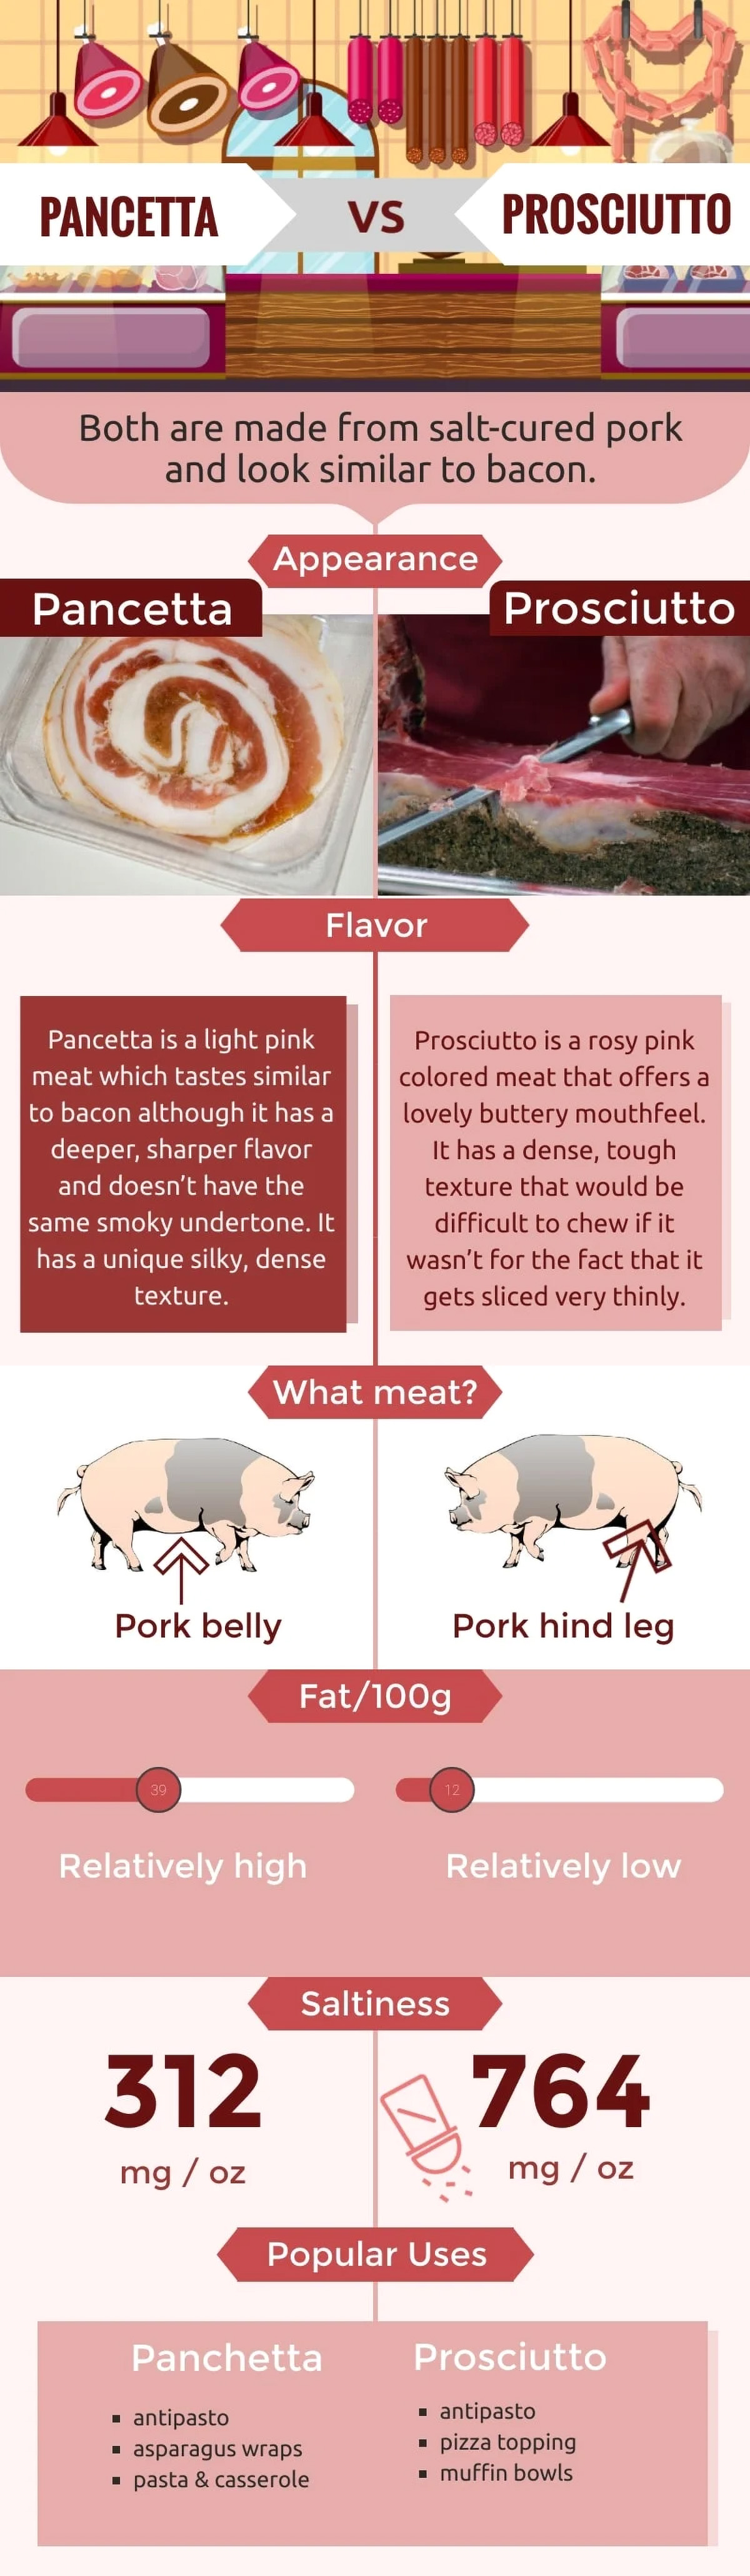 pancetta vs prosciutto infographic